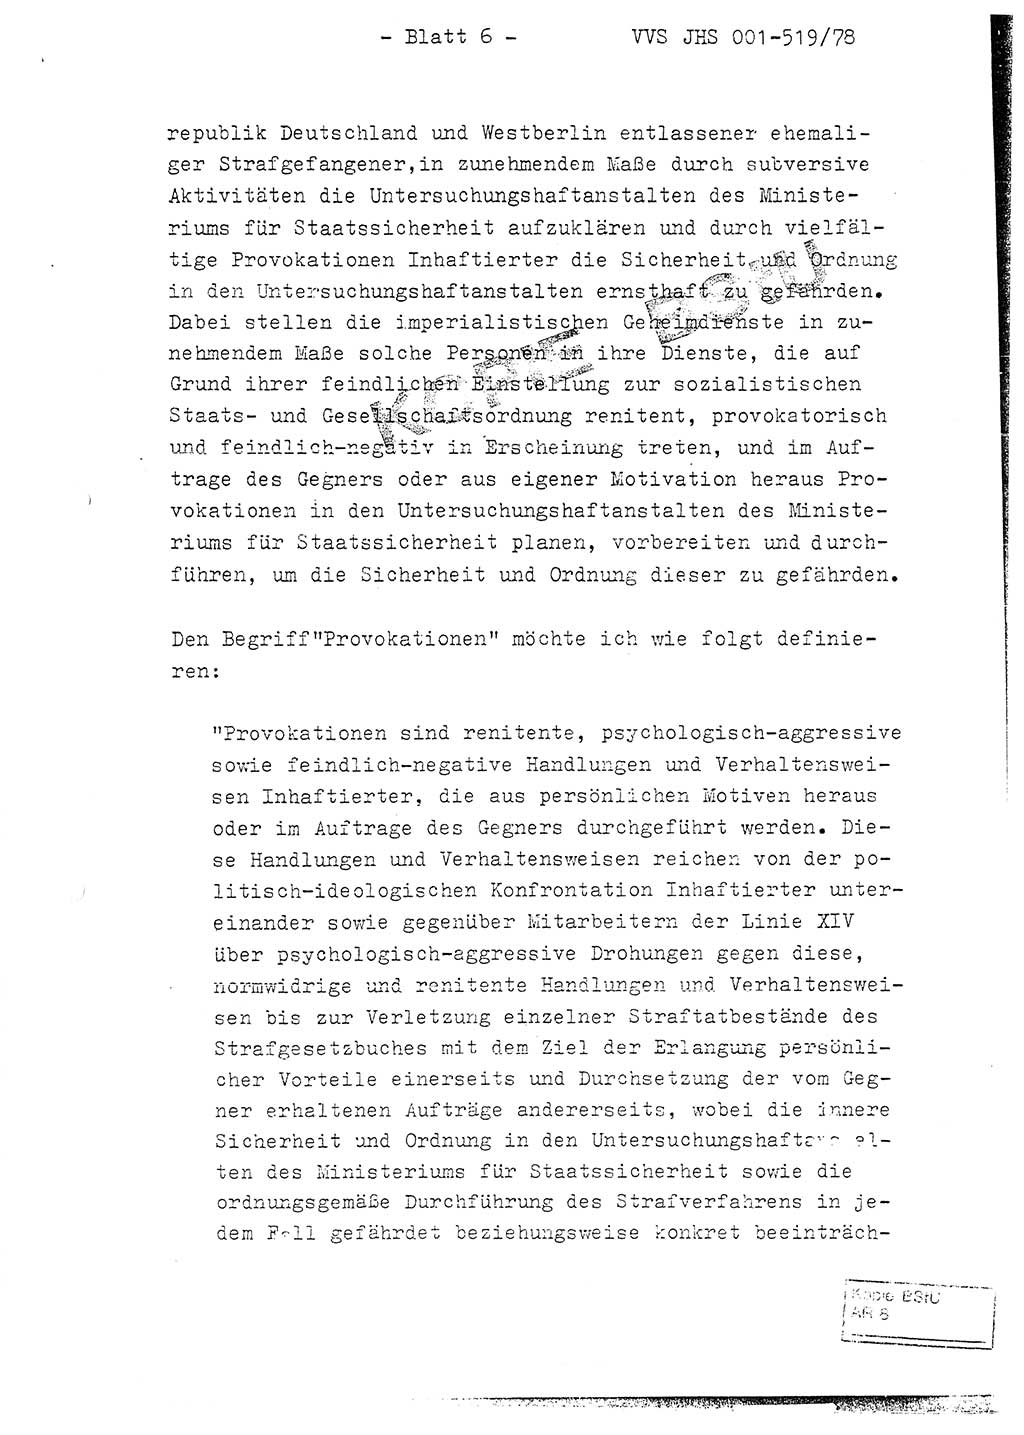 Fachschulabschlußarbeit Hauptmann Alfons Lützelberger (Abt. ⅩⅣ), Ministerium für Staatssicherheit (MfS) [Deutsche Demokratische Republik (DDR)], Juristische Hochschule (JHS), Vertrauliche Verschlußsache (VVS) 001-519/78, Potsdam 1978, Blatt 6 (FS-Abschl.-Arb. MfS DDR JHS VVS 001-519/78 1978, Bl. 6)